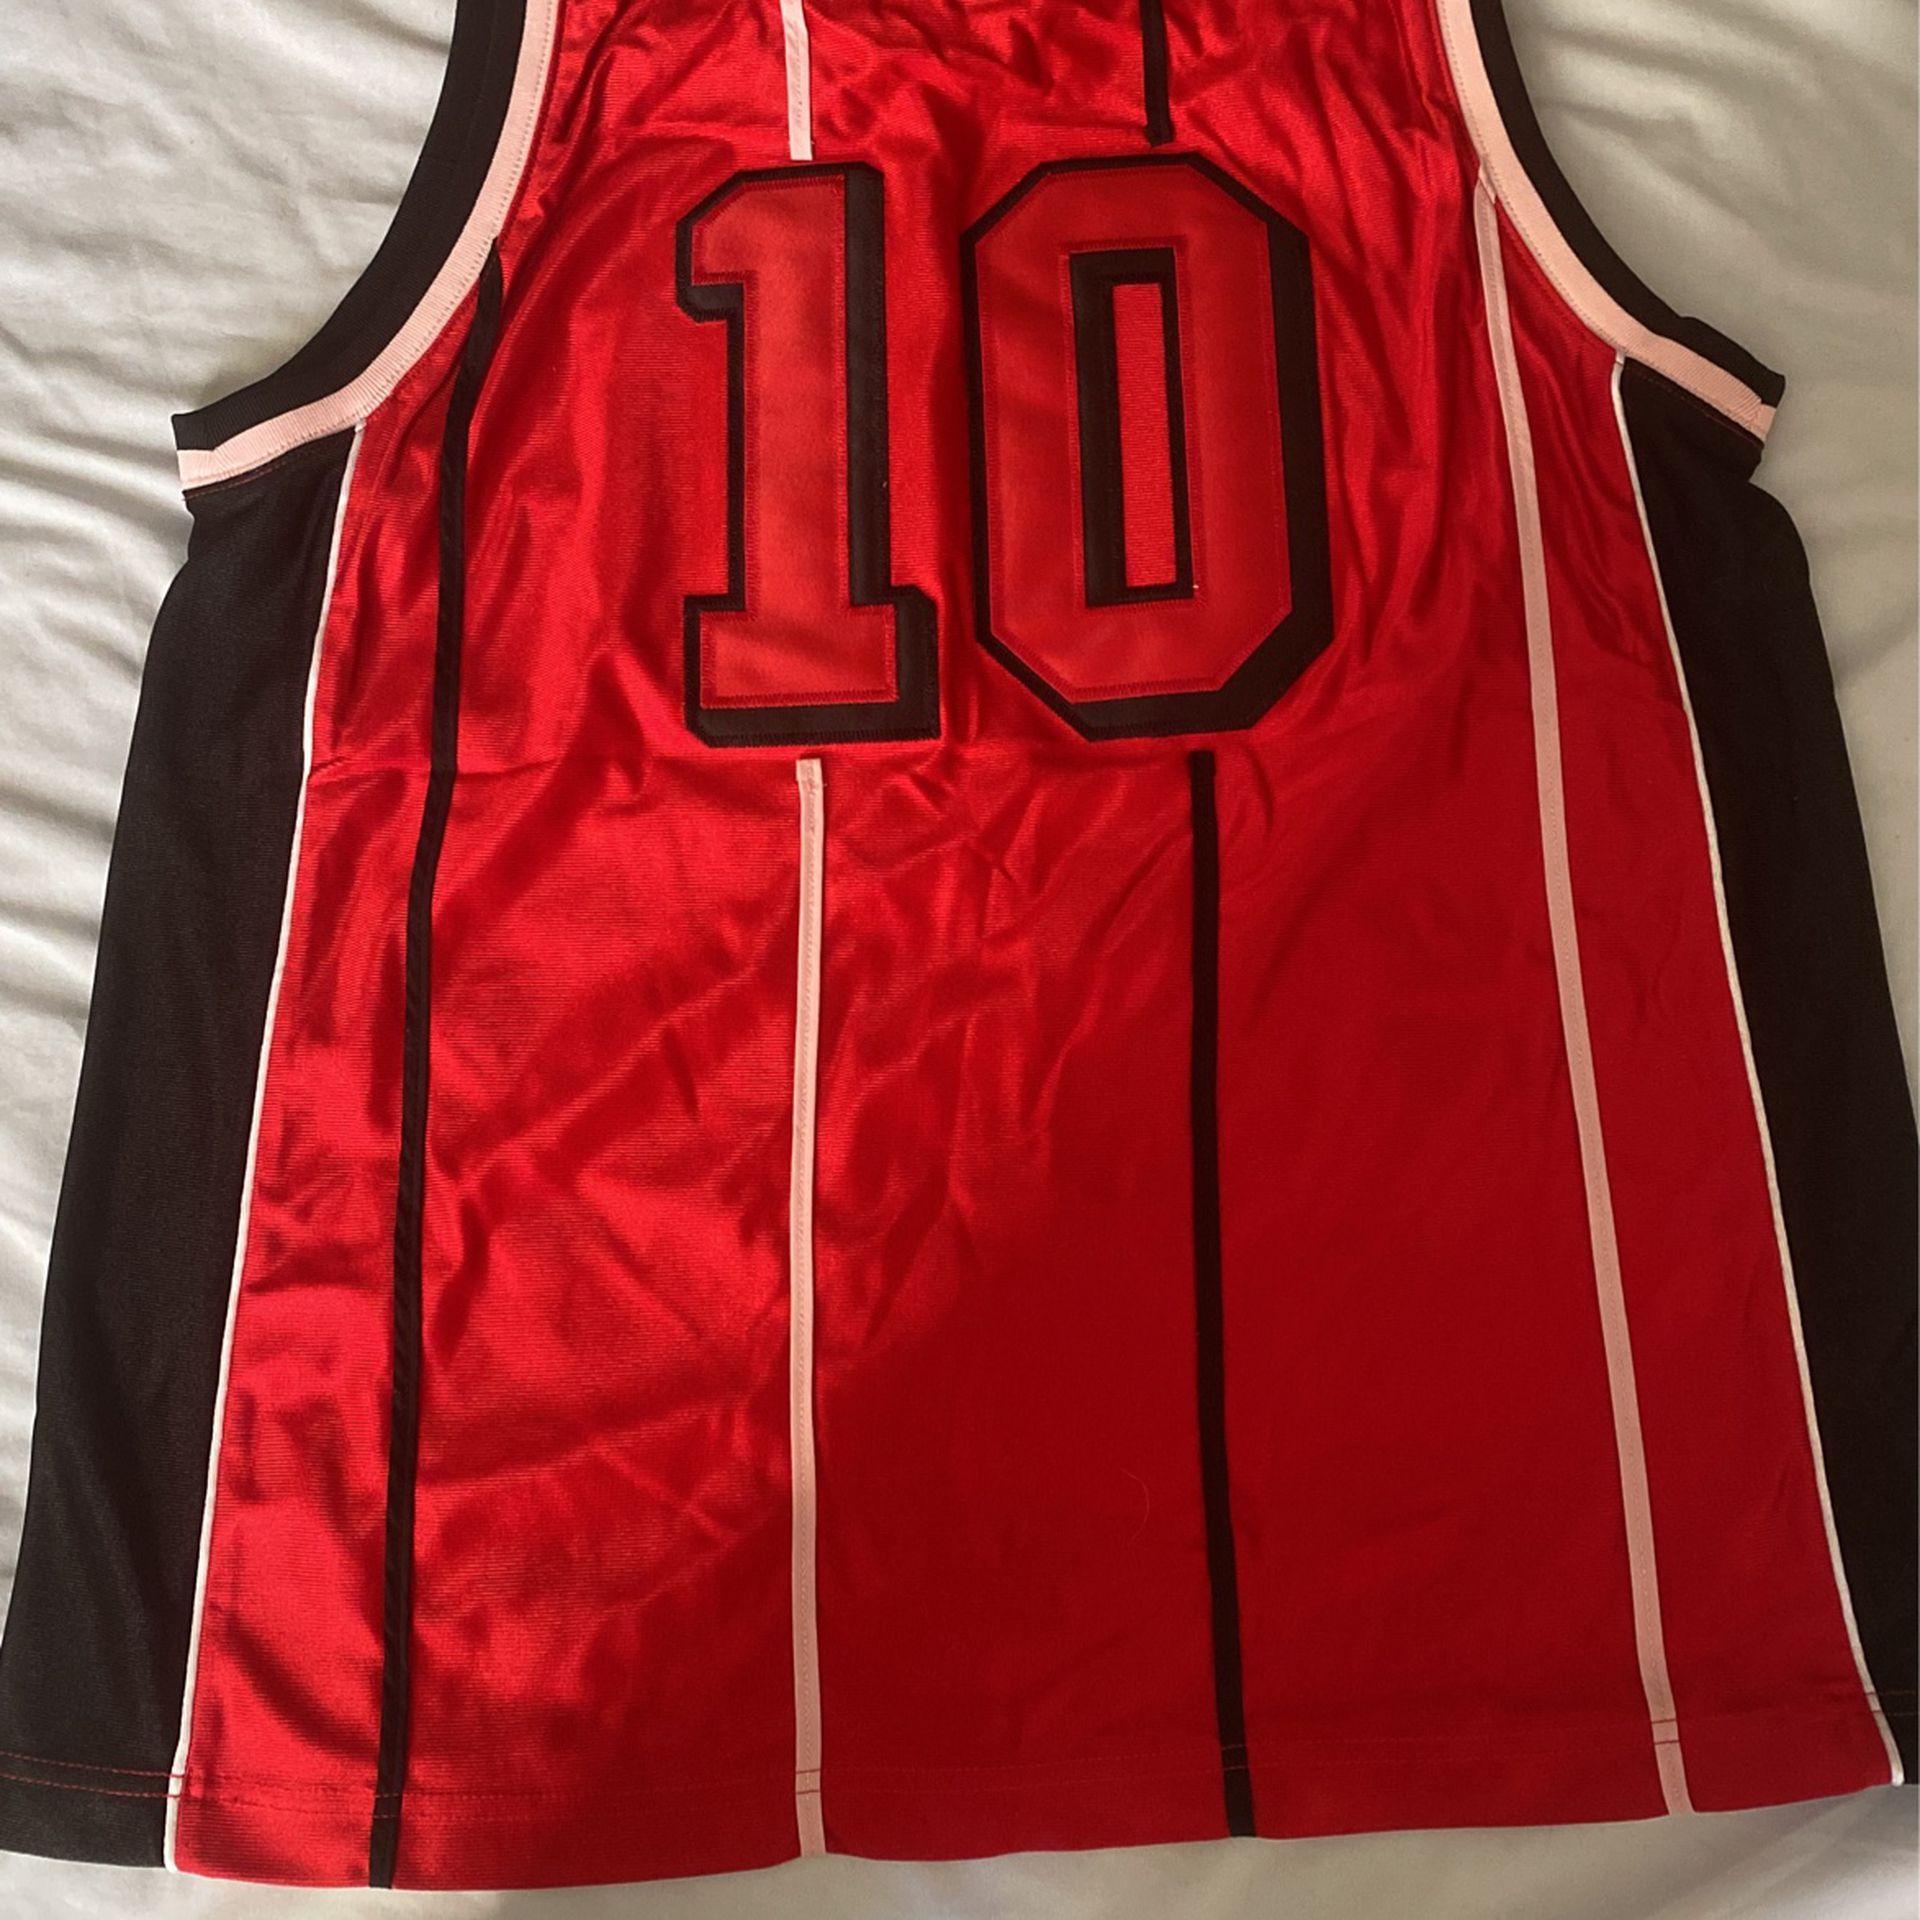 Supreme NBA jersey for Sale in Pompano Beach, FL - OfferUp